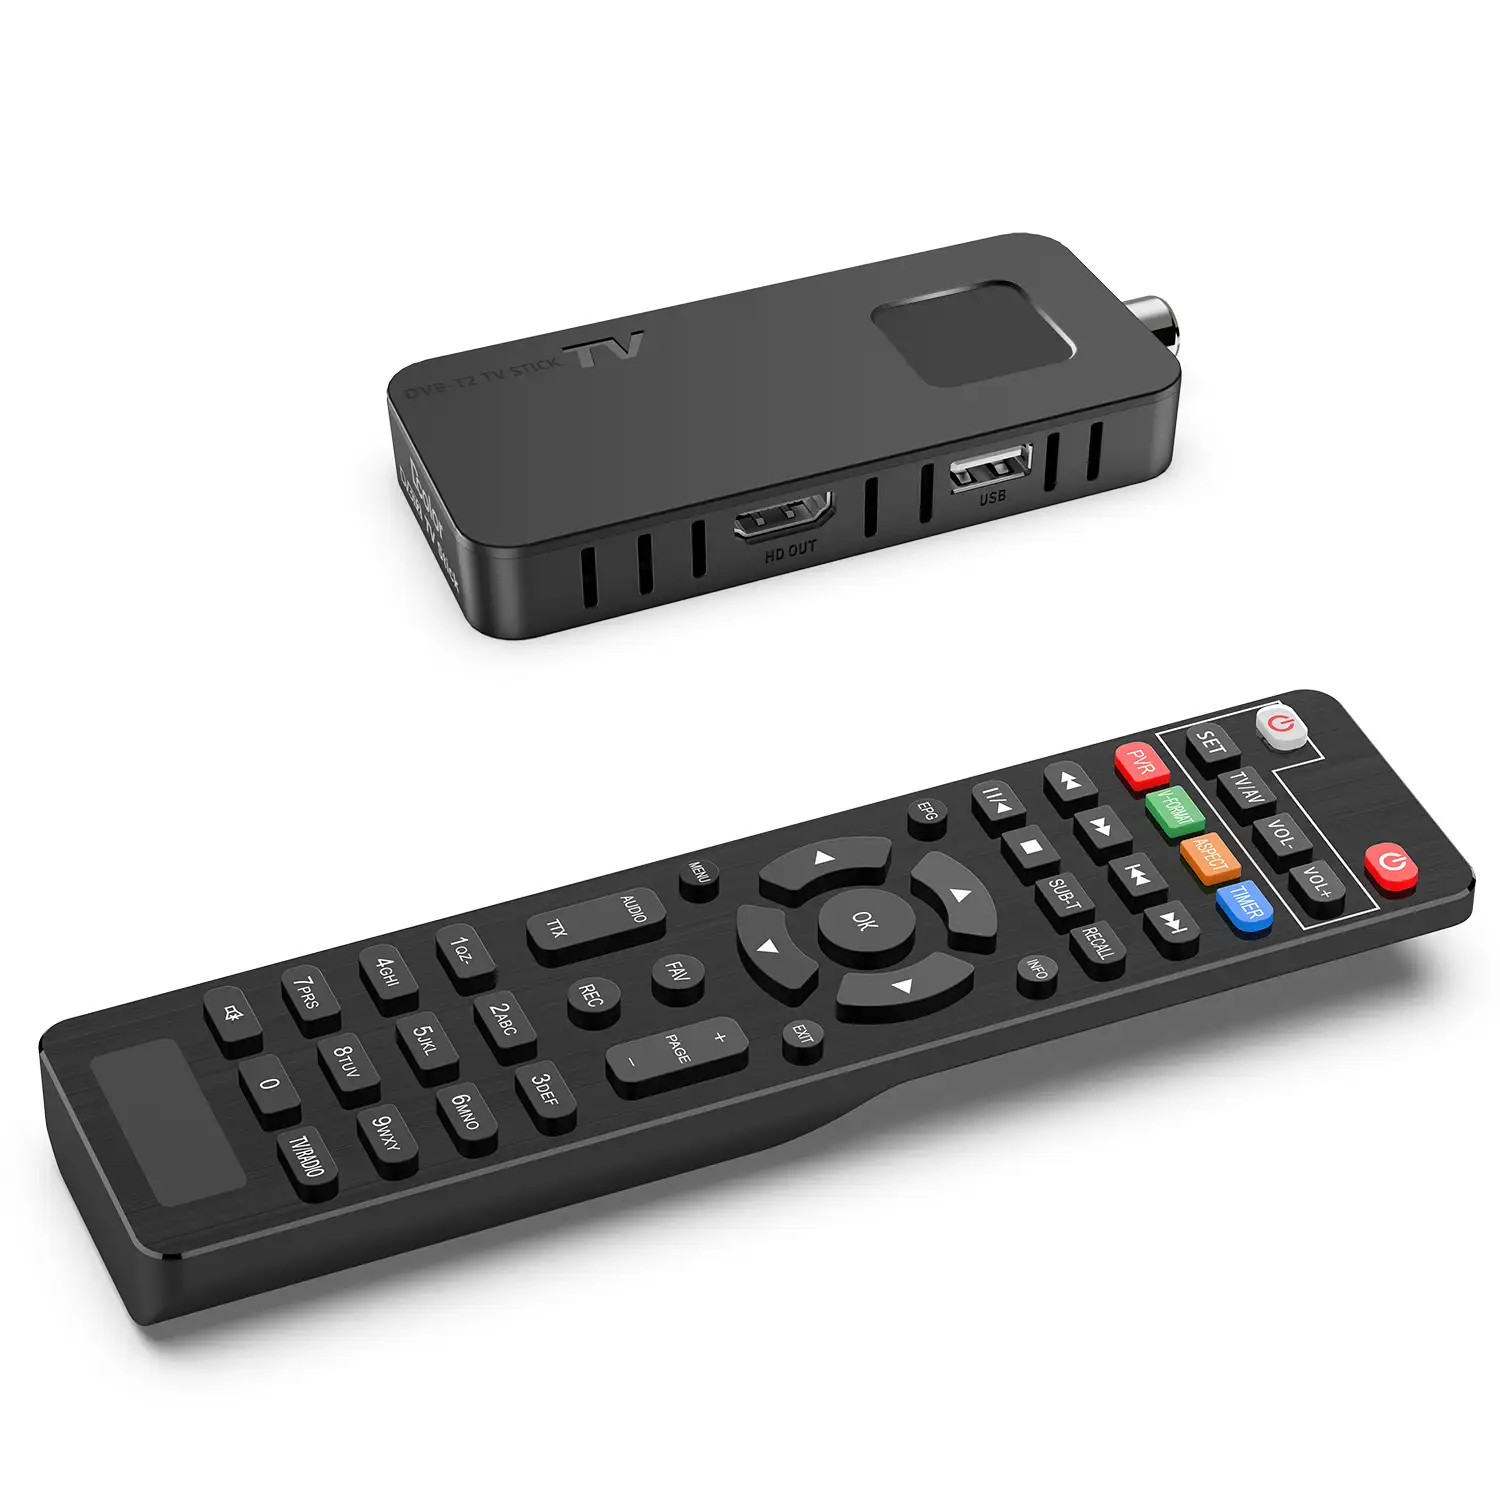 HD CÁP HEVC H.265 DVB T2 Kỹ Thuật Số Internet Tv DVB-C Để Set Top Box Giải Mã HEVC DVB T2 Mini Stick